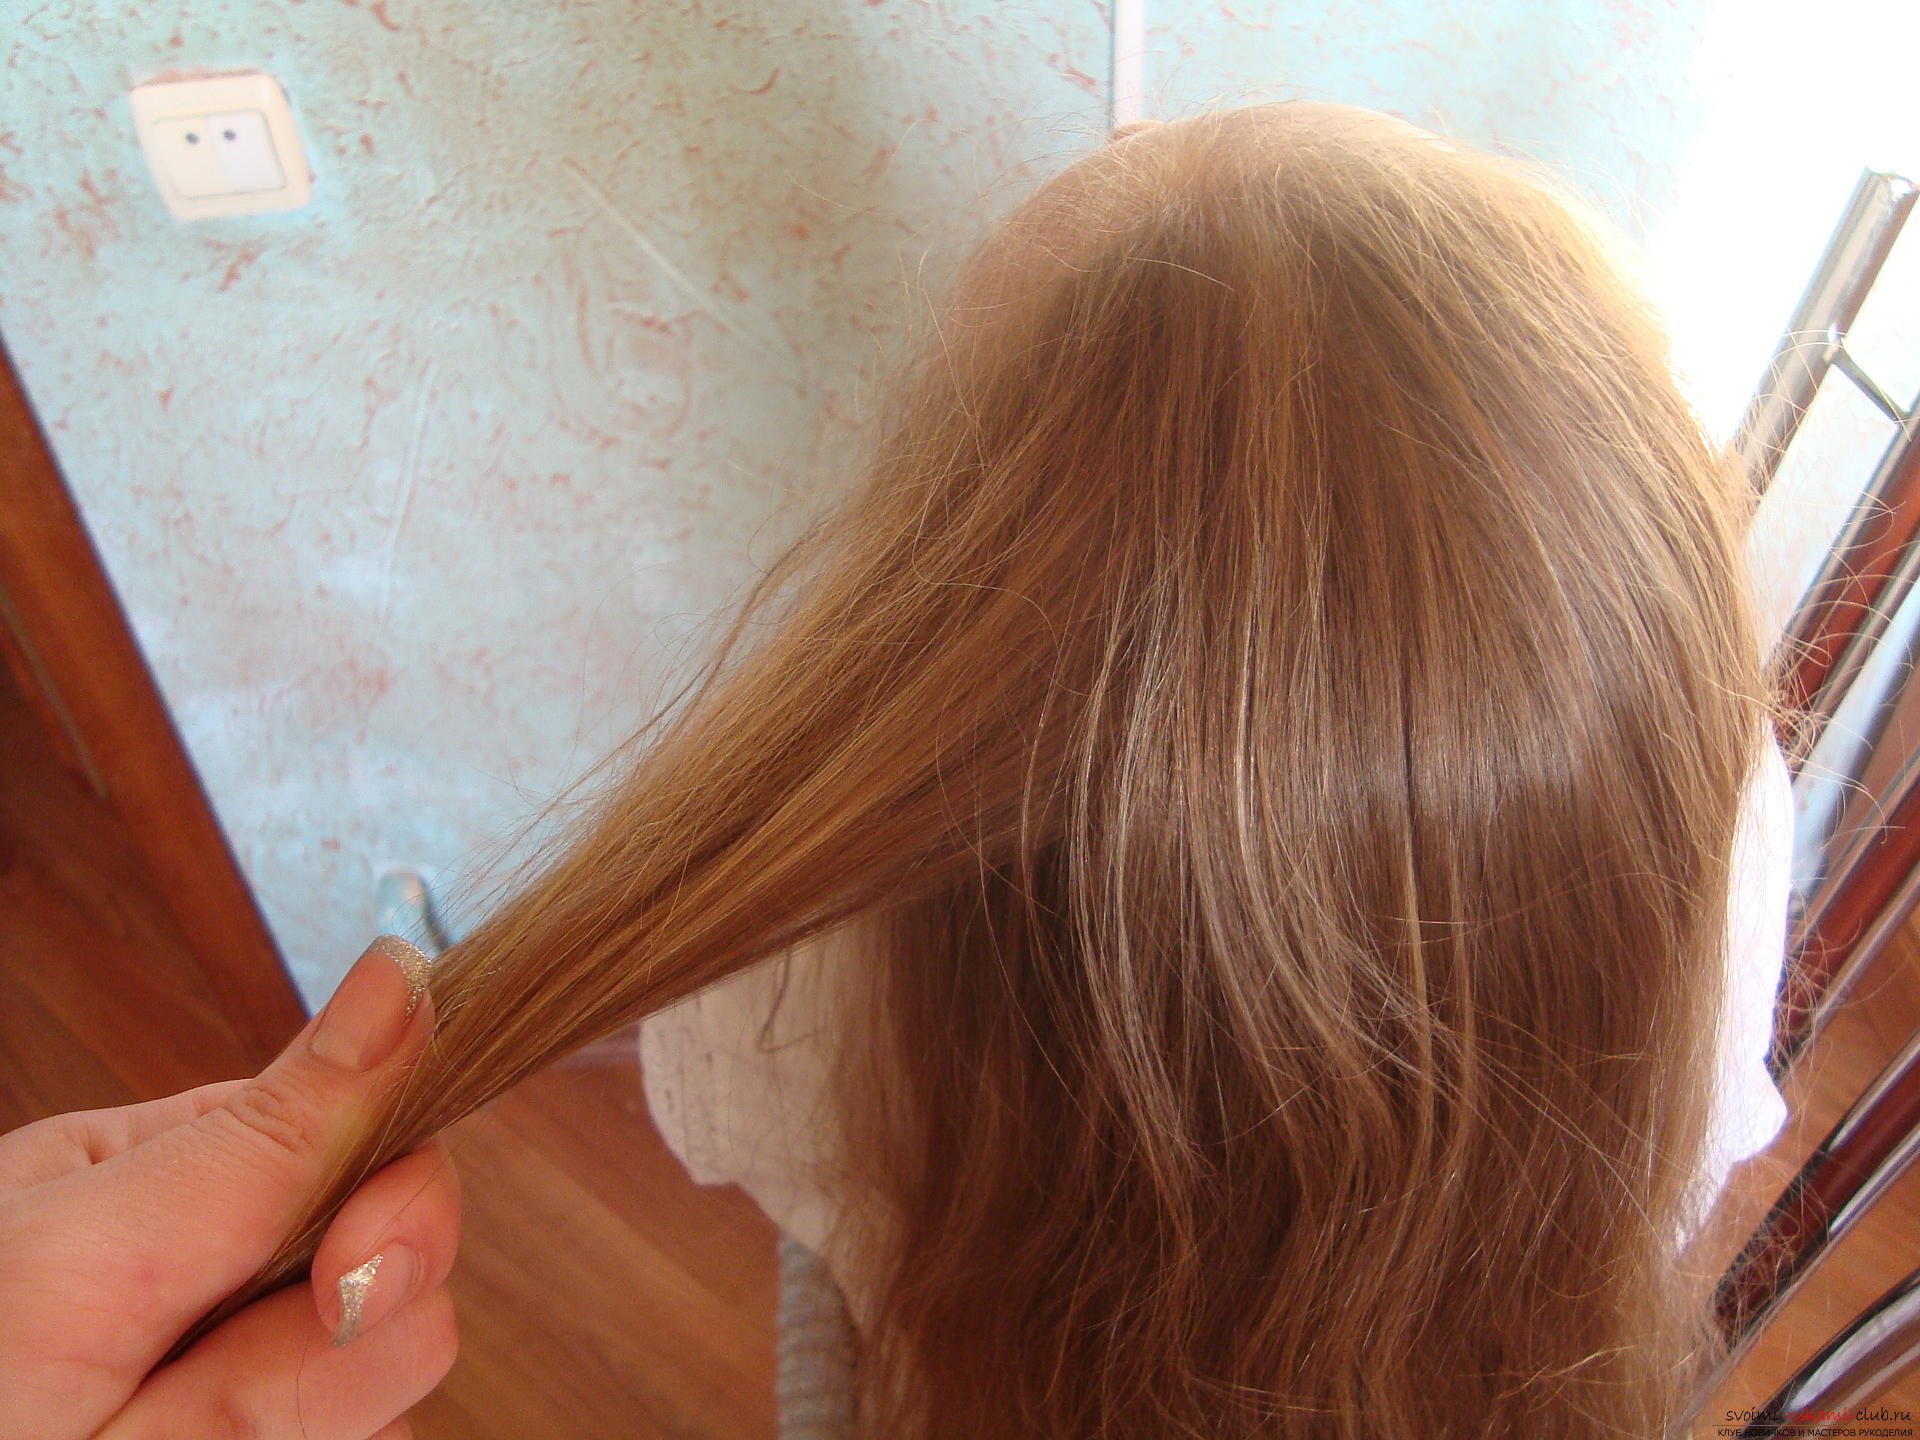 Как заплести красивую косу в технике плетения колосок? Урок по плетению косы с подробными рекомендациями, фото и видео-инструкцией